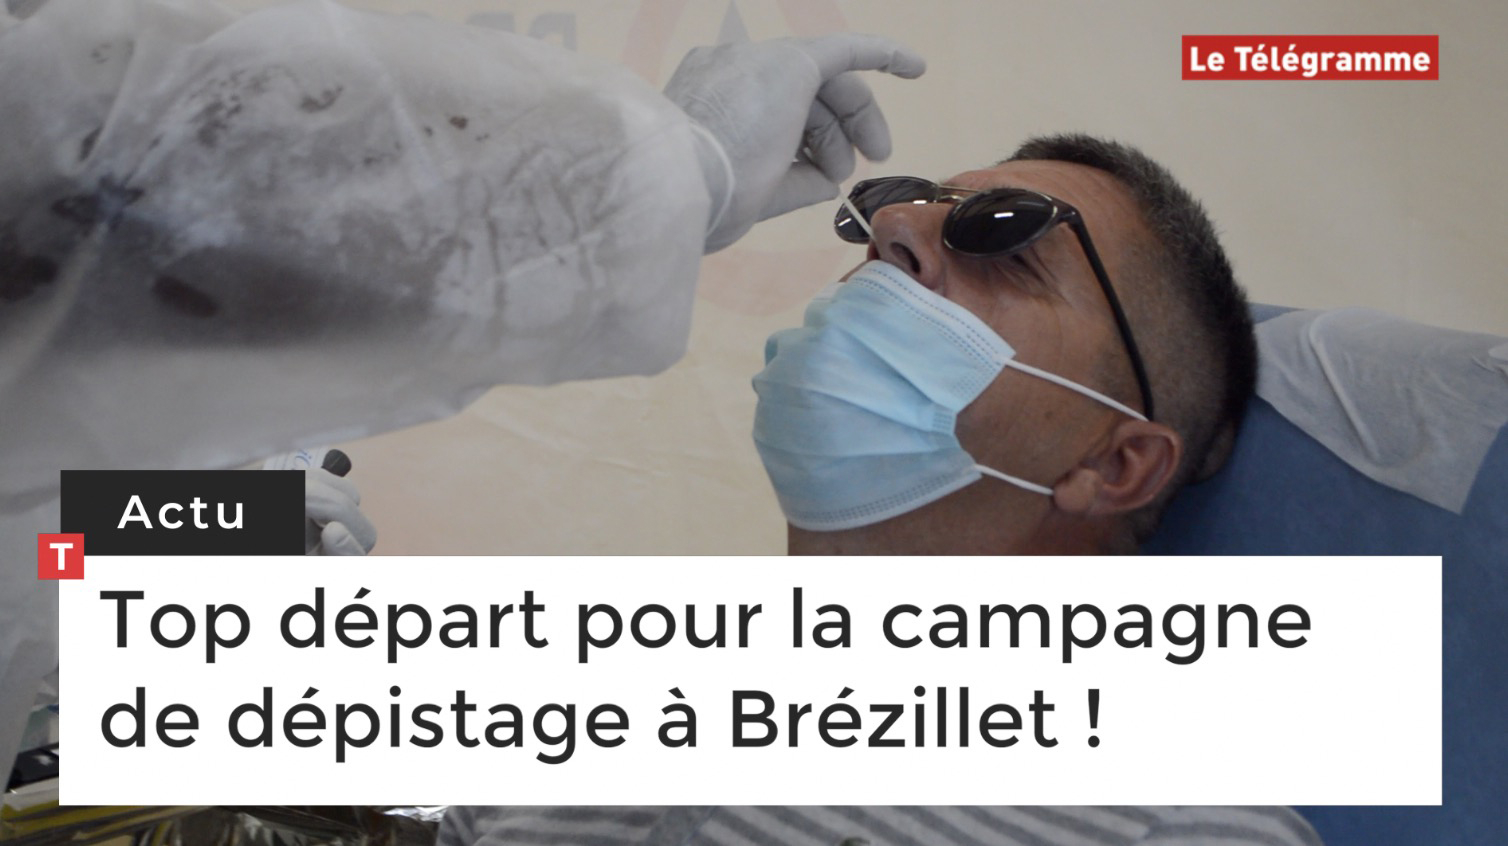 Top départ pour la campagne de dépistage du Covid-19 à Brézillet !  (Le Télégramme)